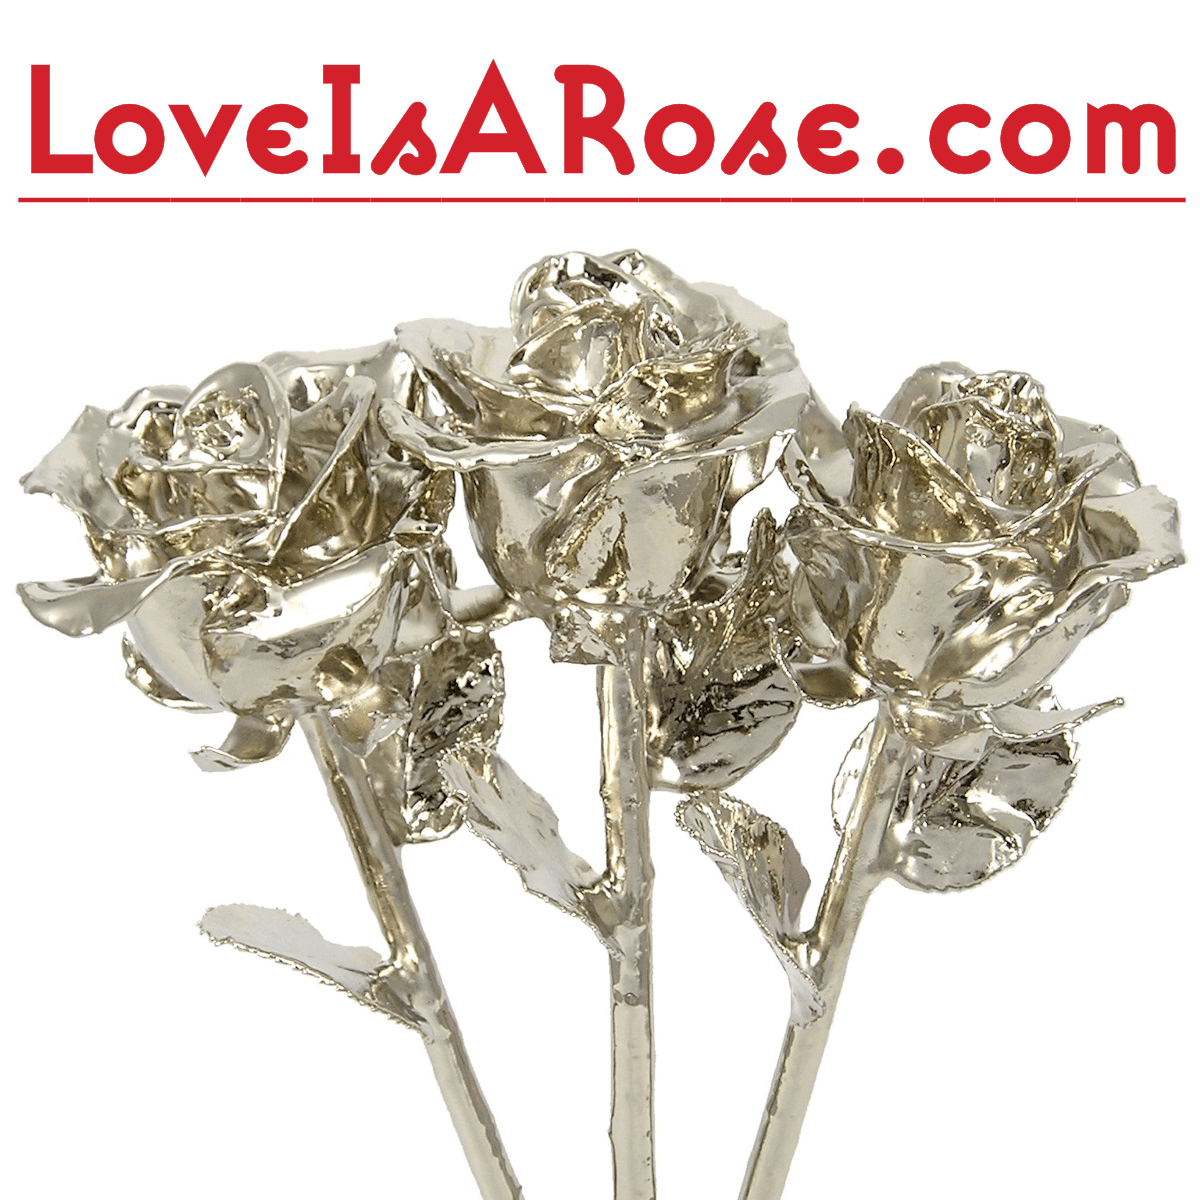 Real Platinum Roses: Platinum-Dipped Roses